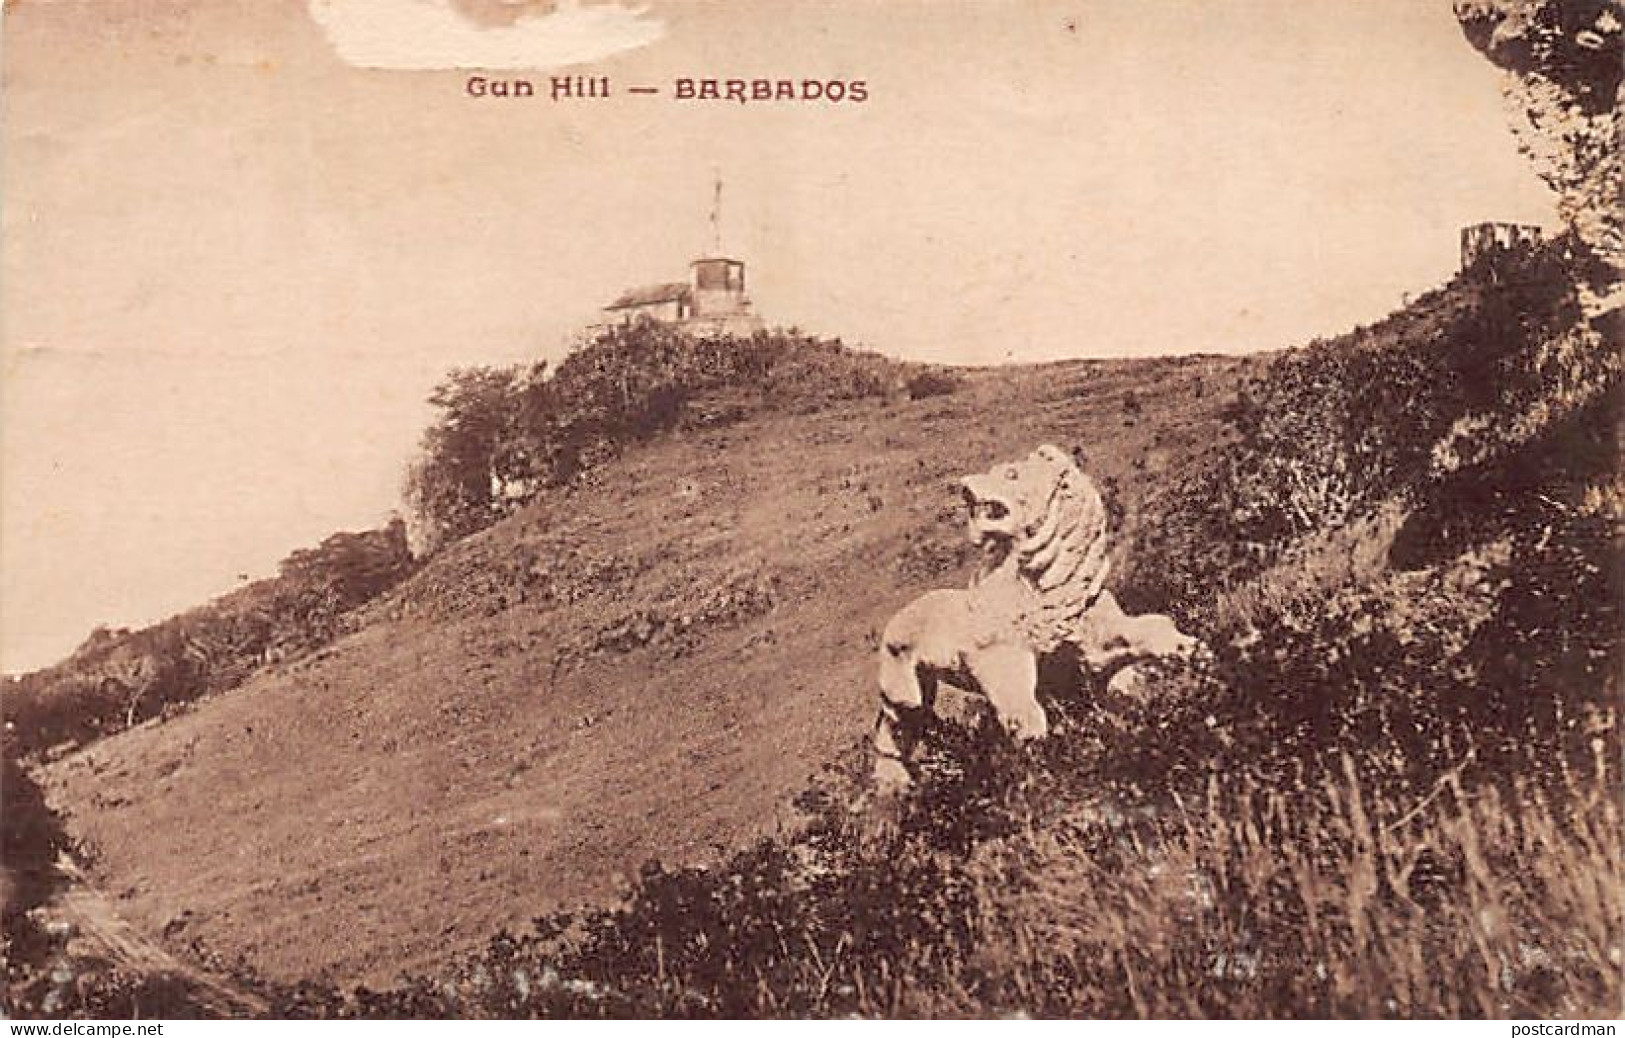 Barbados - Gun Hill - SEE SCANS FOR CONDITION - Publ. J. COMBIER  - Barbados (Barbuda)